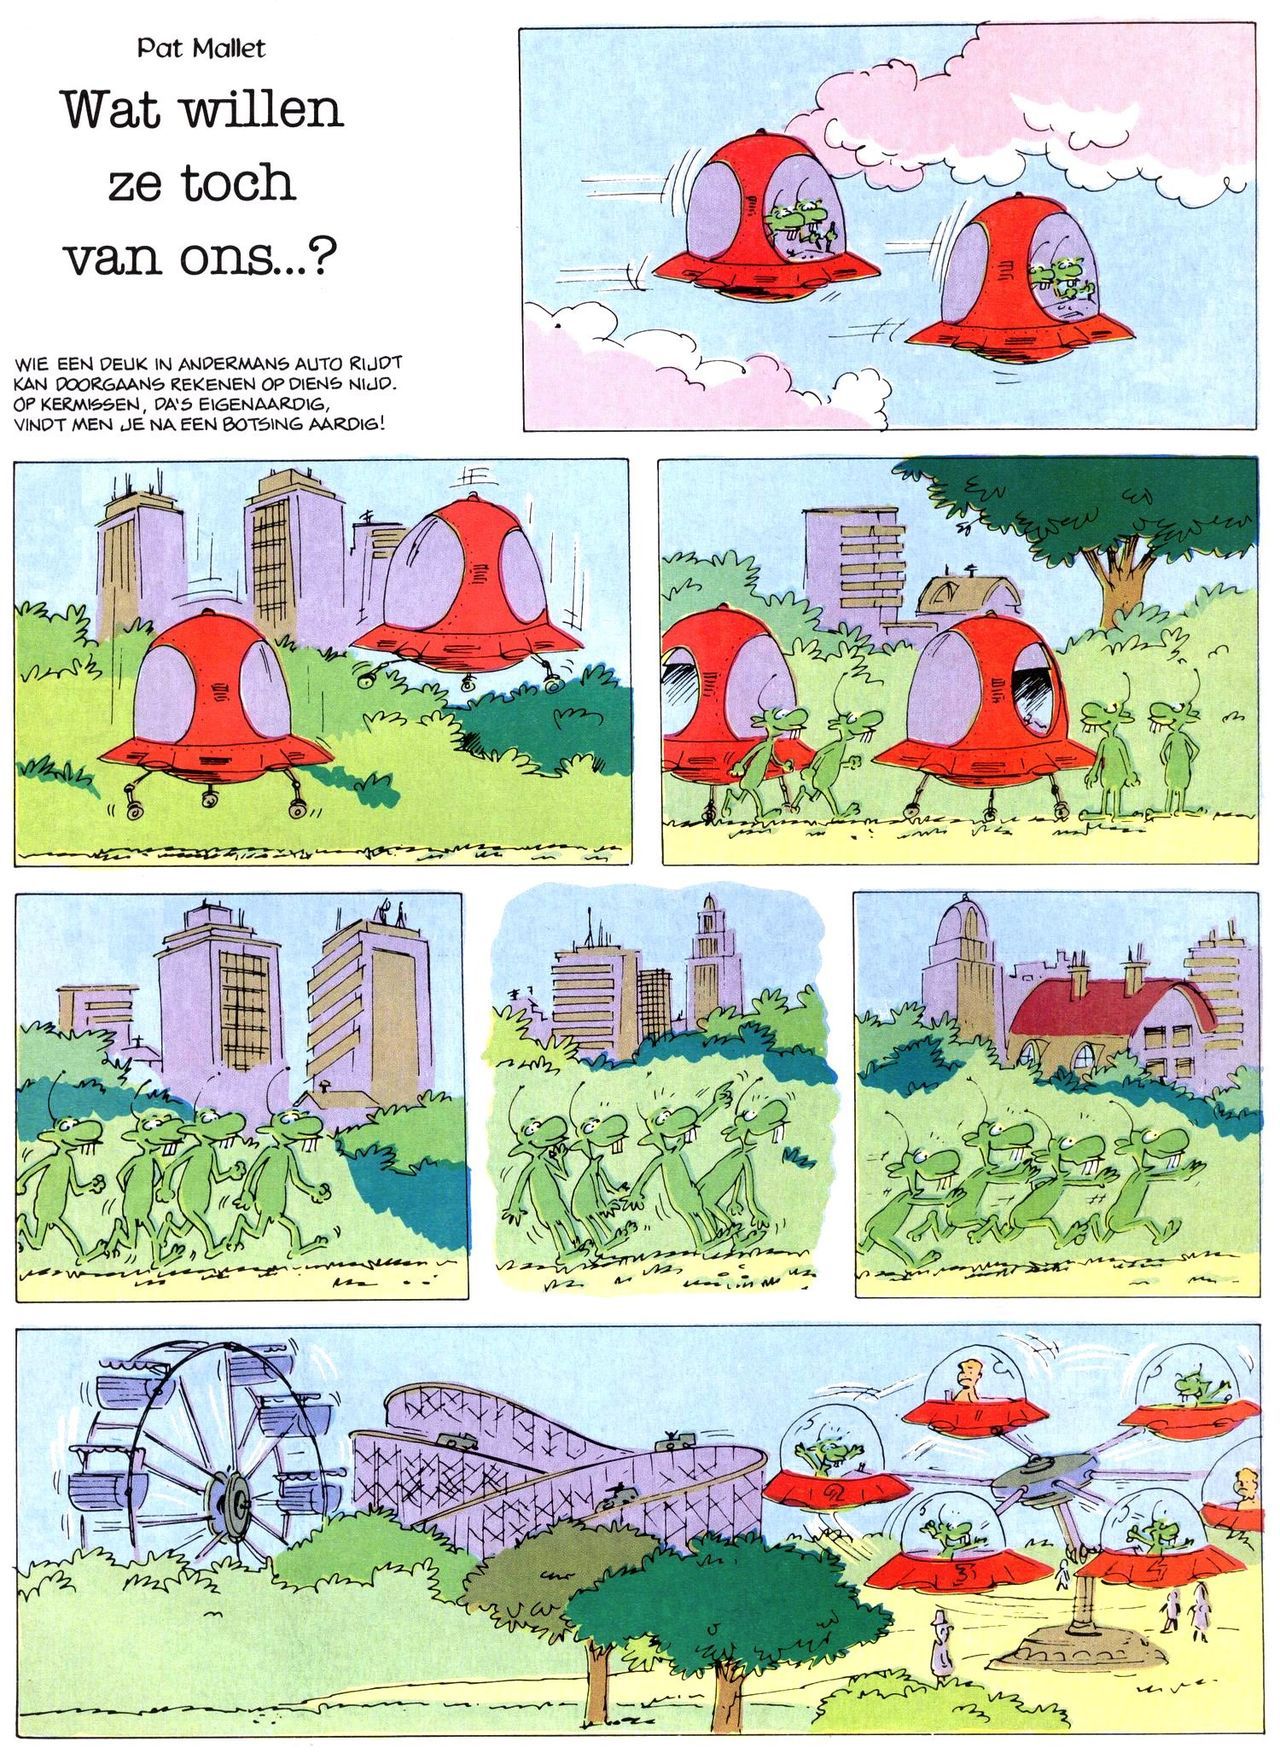 Het Is Groen En Het.. - 02 - Verboden Op Het Gras Te Lopen (Dutch) Een oude humoristische serie van Pat Mallet 9